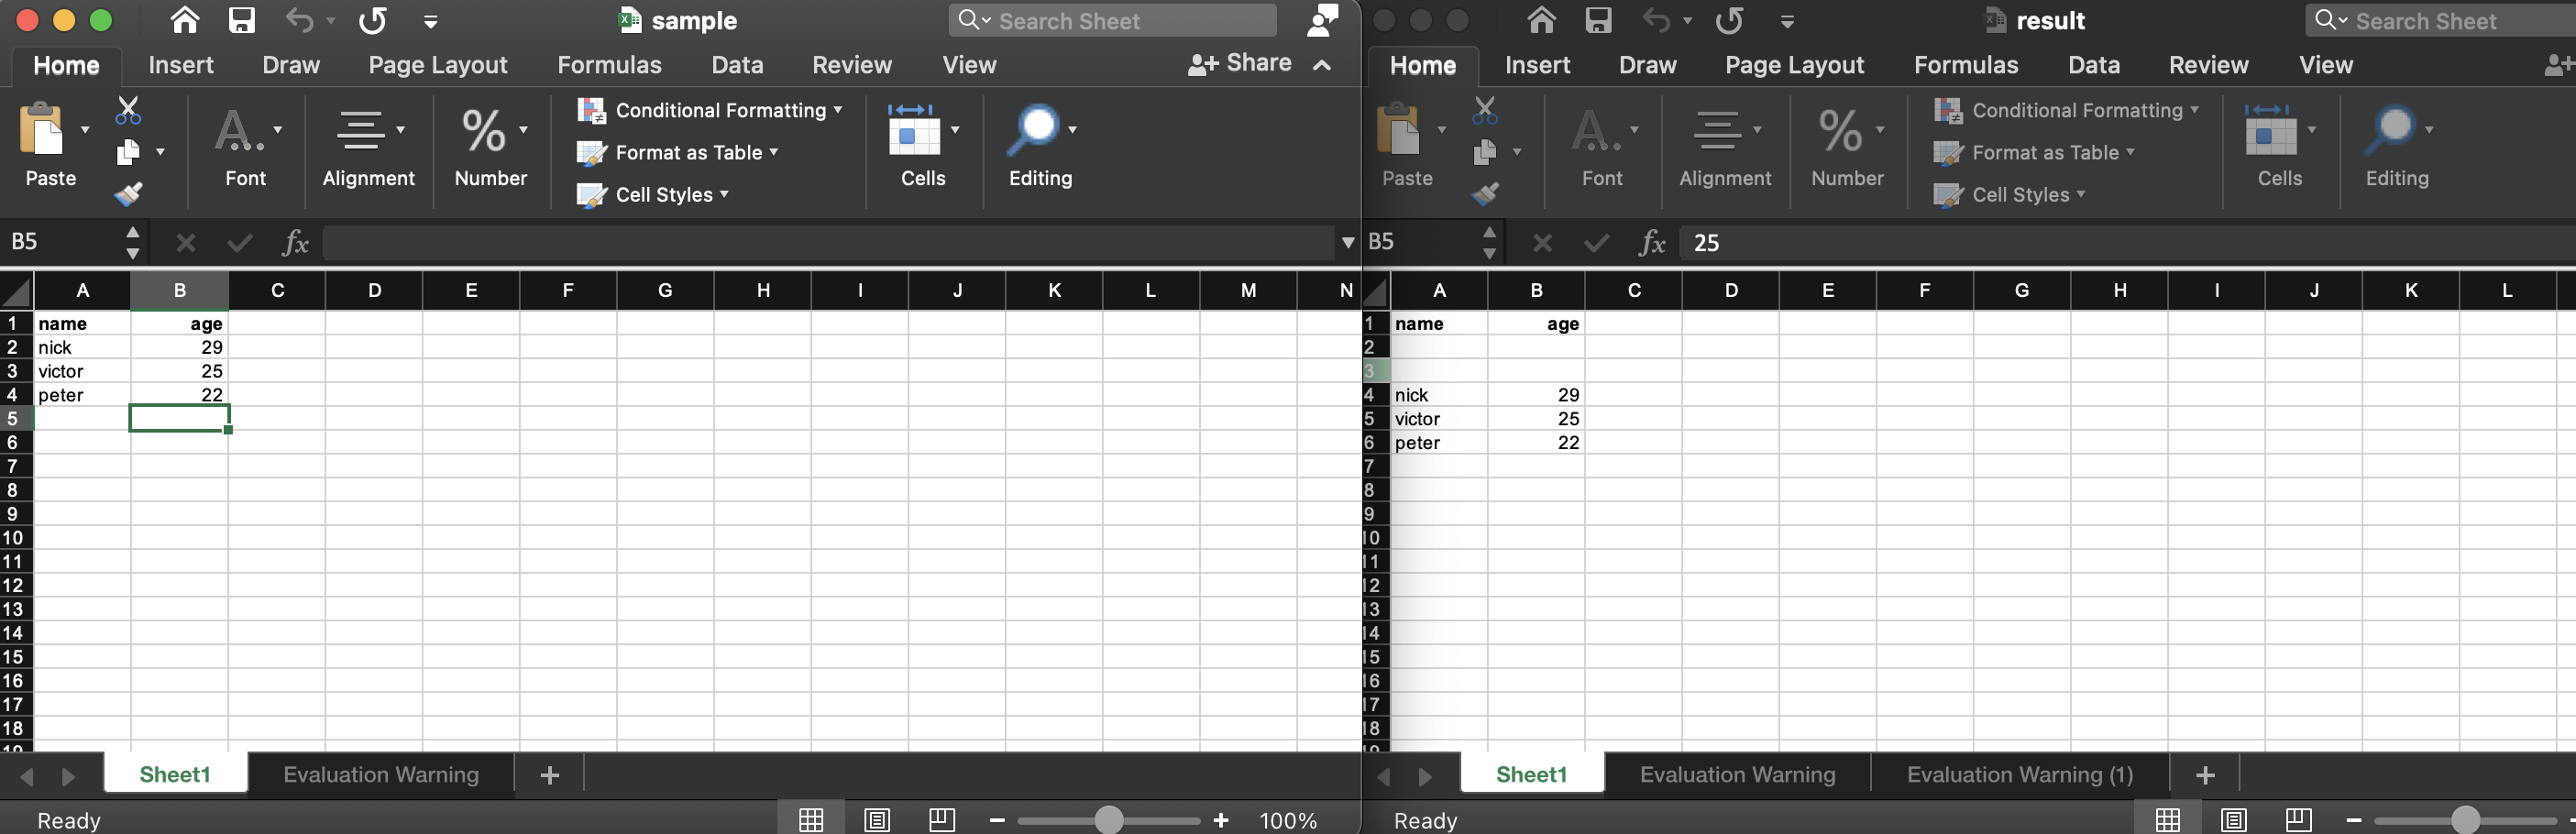 insertar filas y columnas en un archivo de Excel usando Node.js